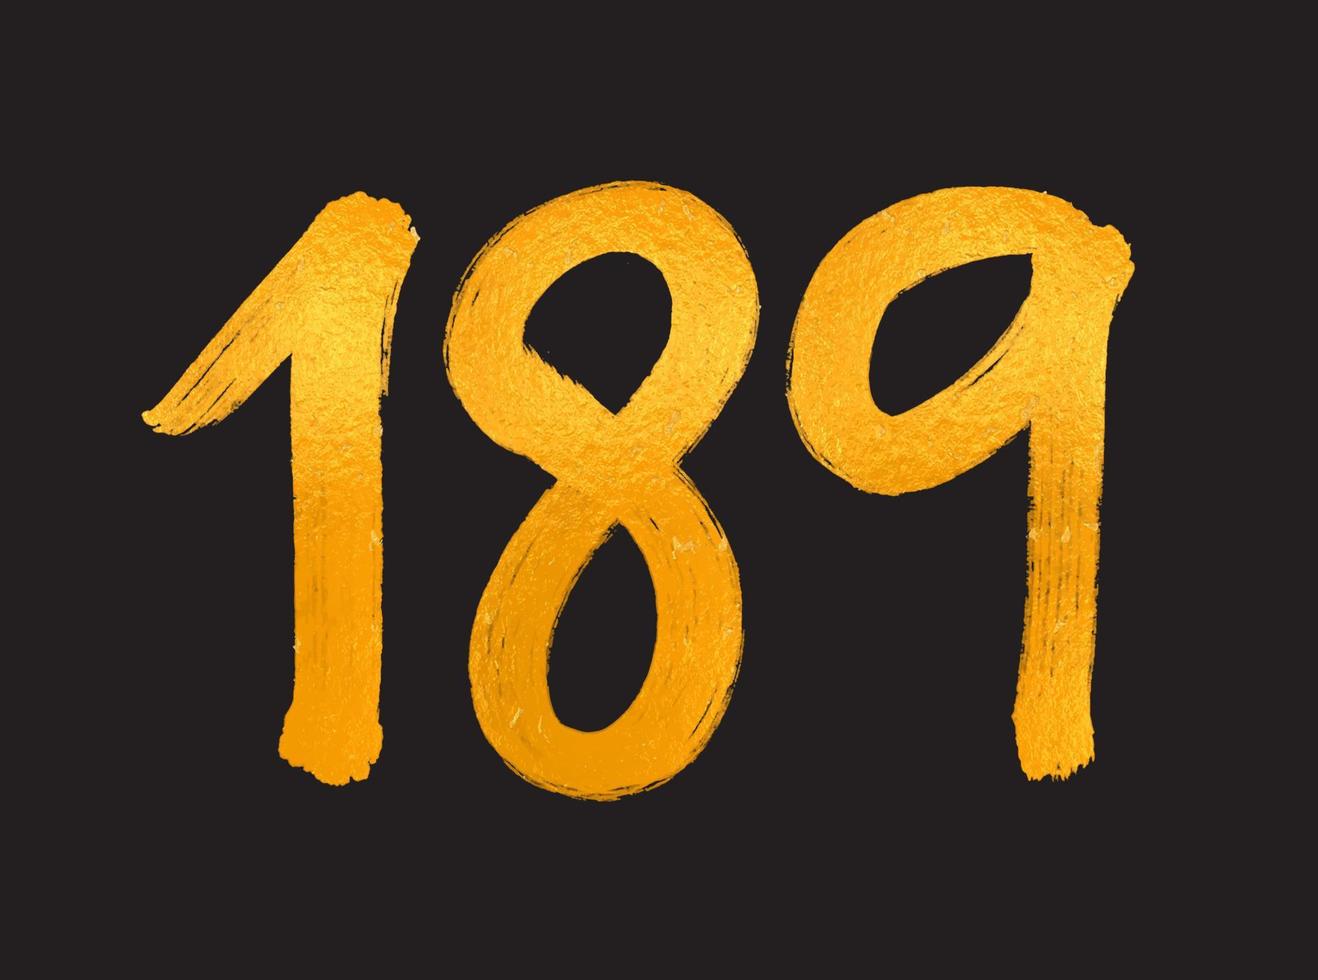 189 numero logo vettore illustrazione, 189 anni anniversario celebrazione vettore modello, 189° compleanno, oro lettering numeri spazzola disegno mano disegnato schizzo, numero logo design per Stampa, t camicia